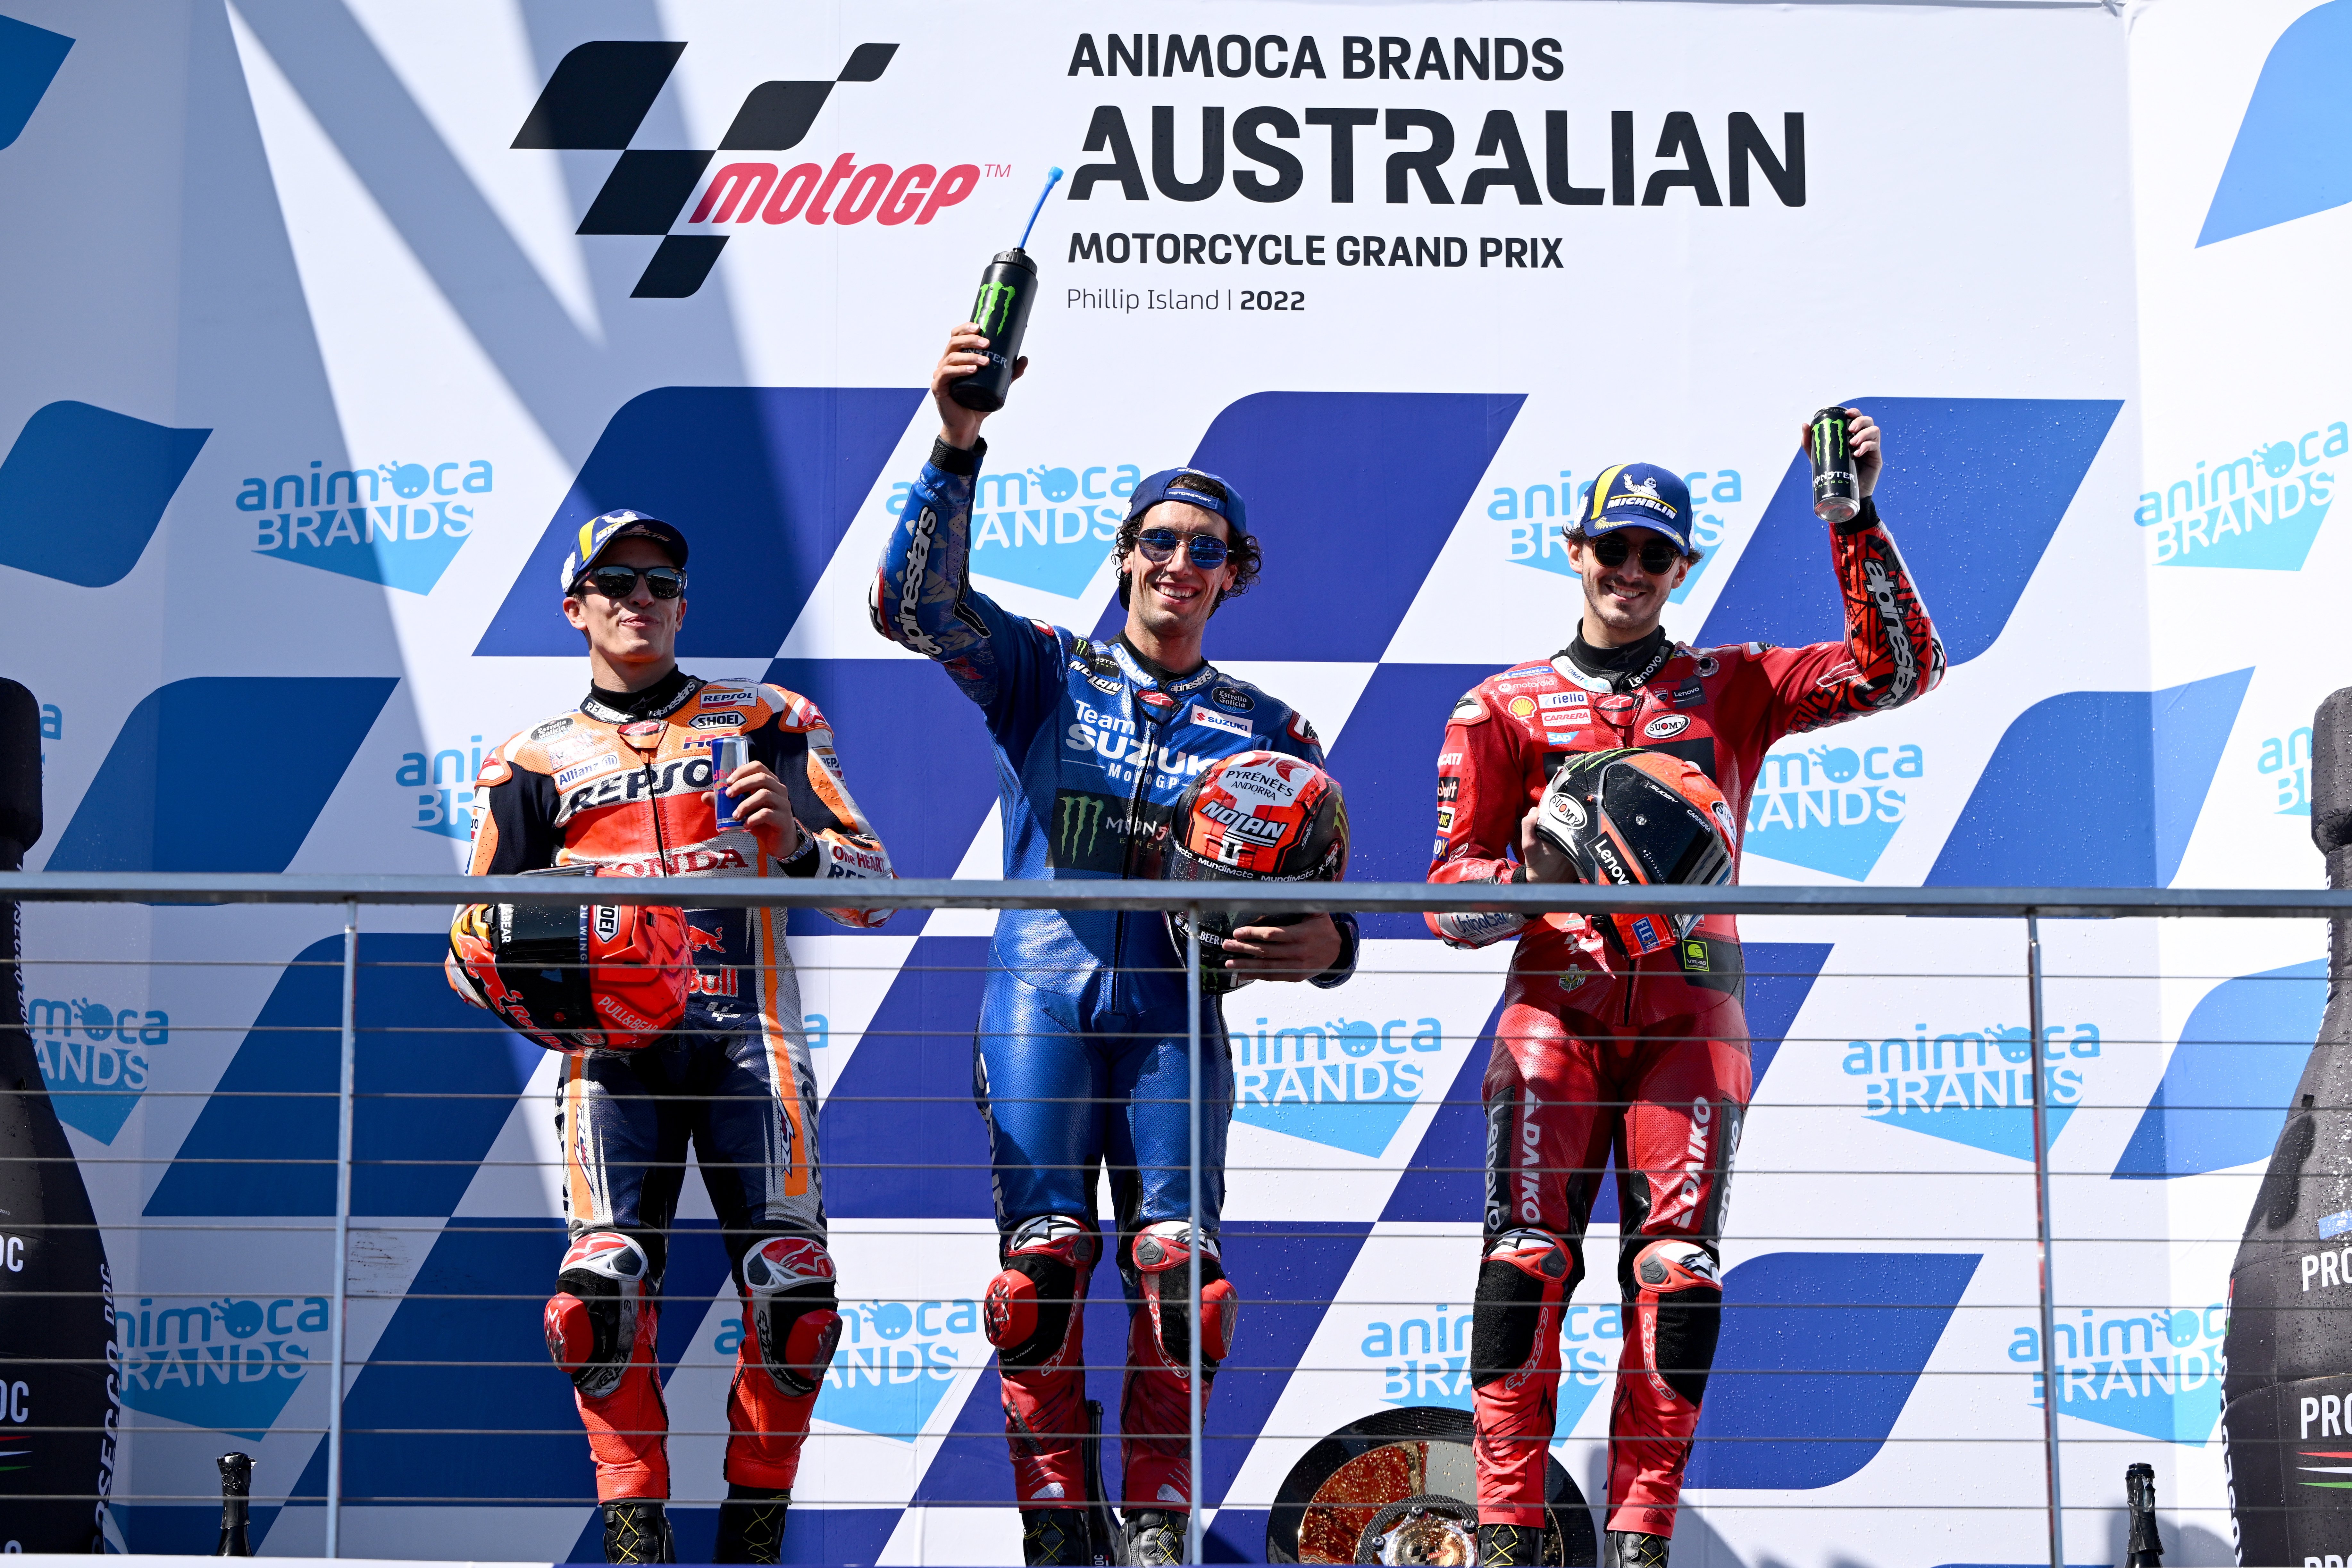 Victòria d'Àlex Rins a Austràlia, segona posició per a Marc Márquez i canvi de líder a MotoGP